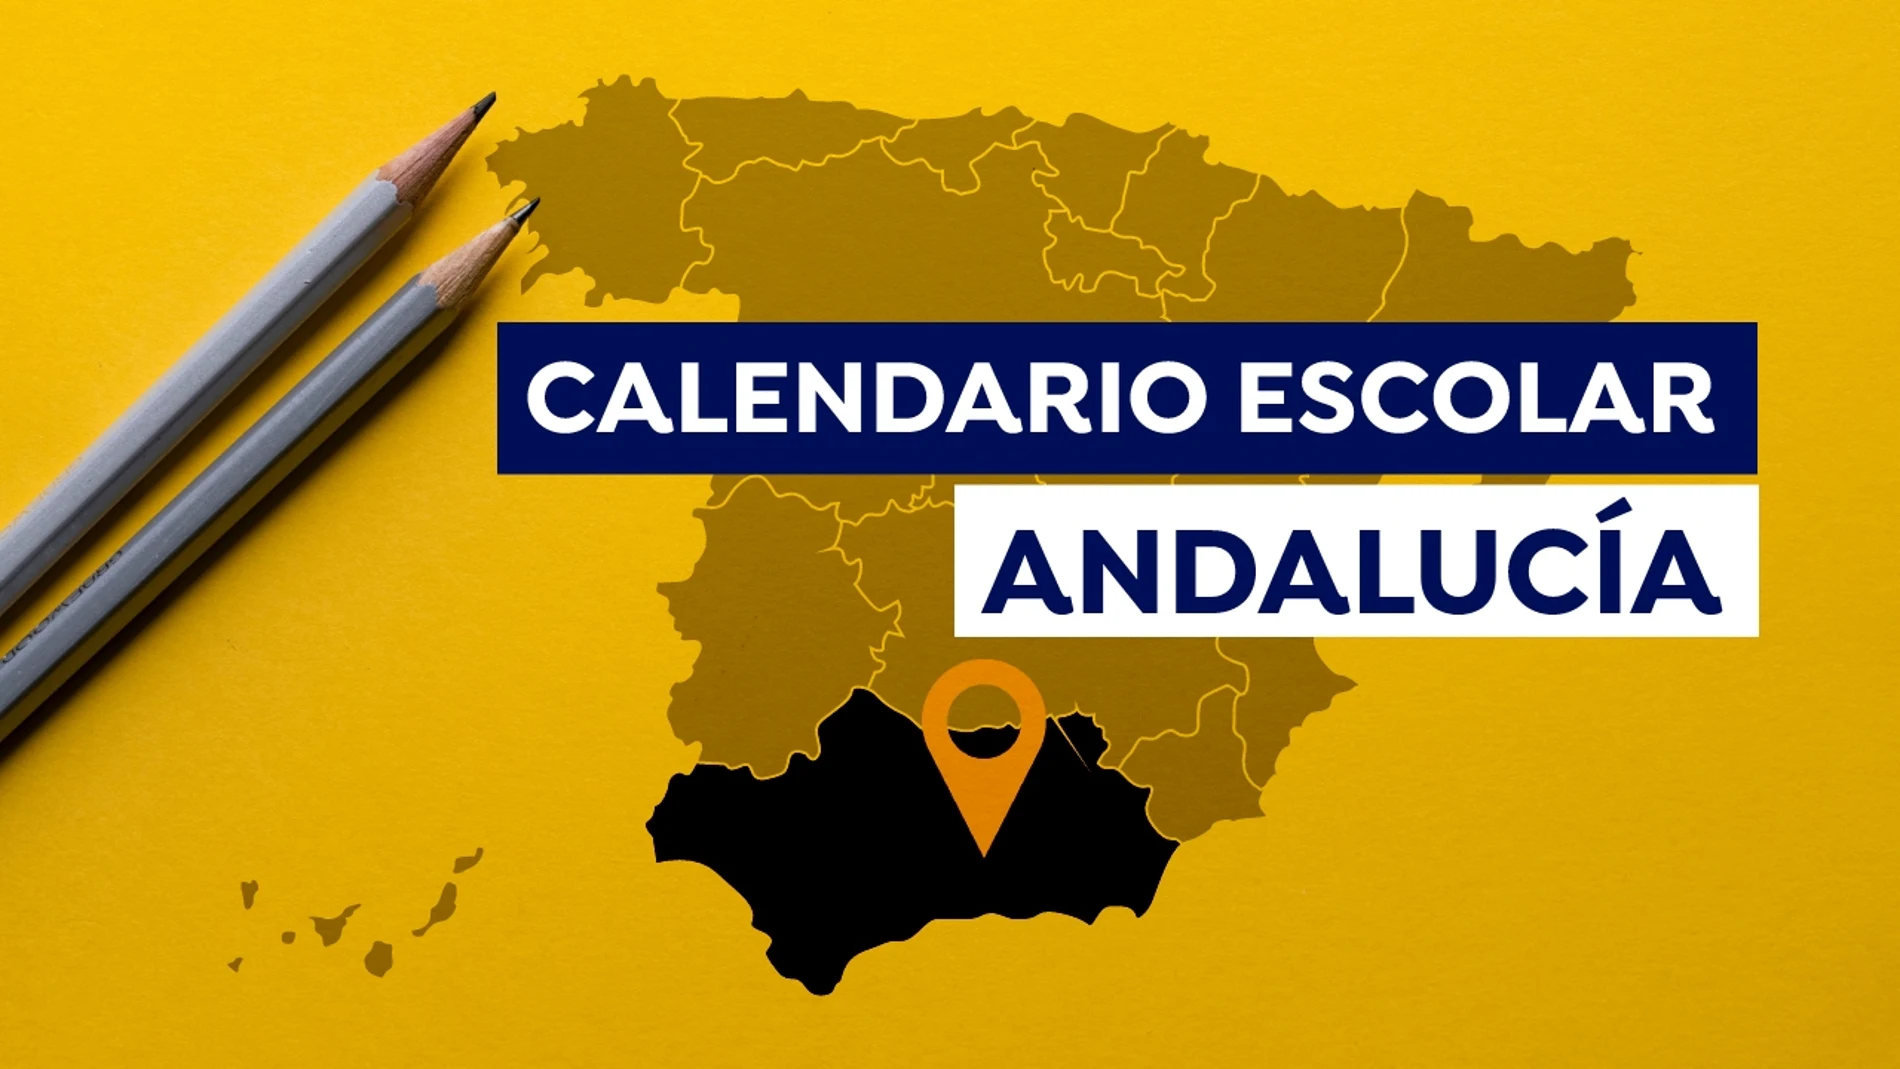 Calendario escolar en Andalucía 2021-2022: Fechas de inicio de las clases, días lectivos y vacaciones